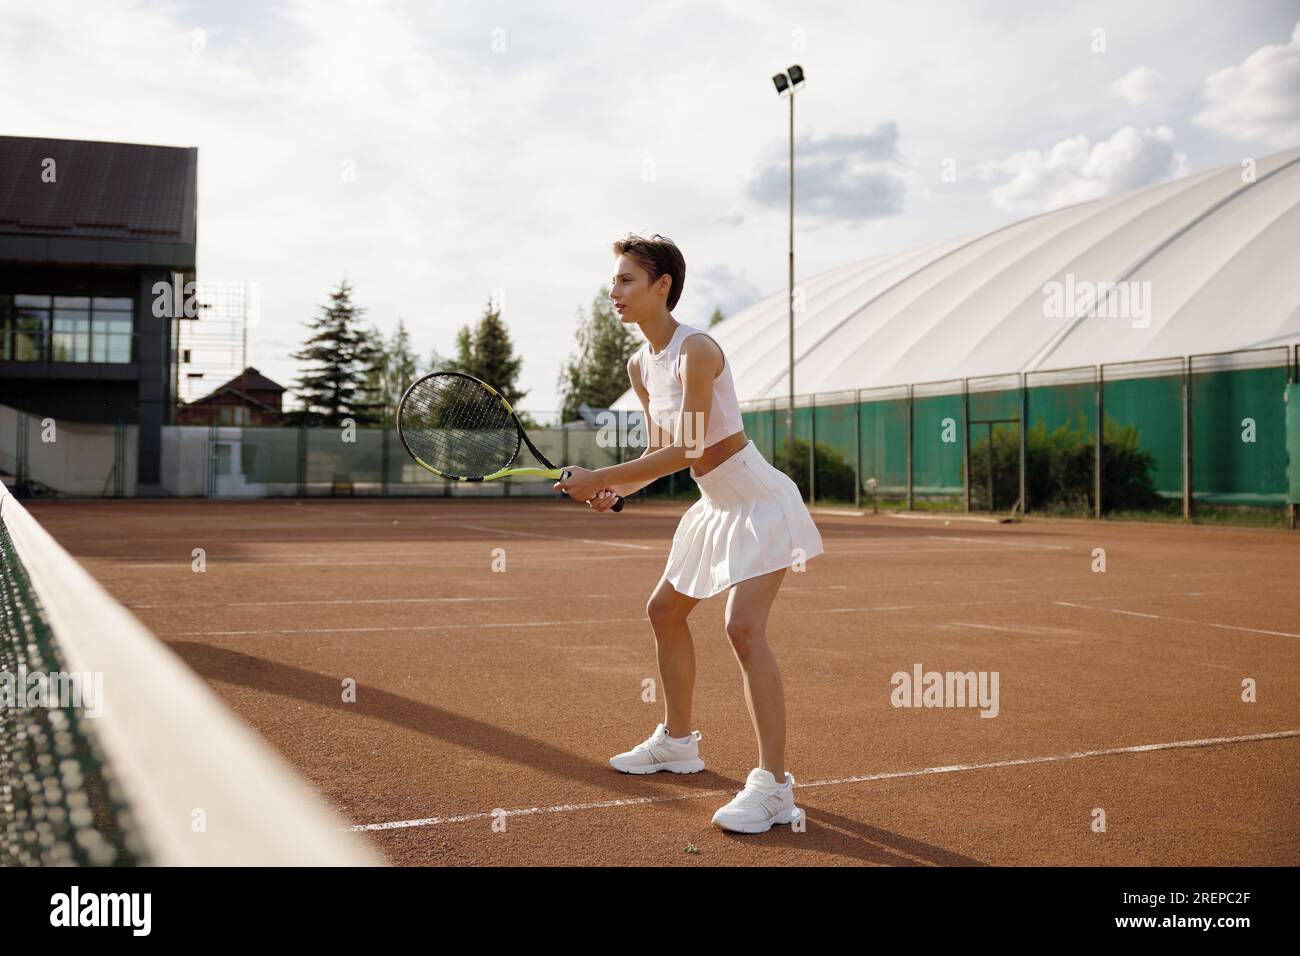 Vue latérale d'une joueuse de tennis en confiance tenant une raquette Banque D'Images